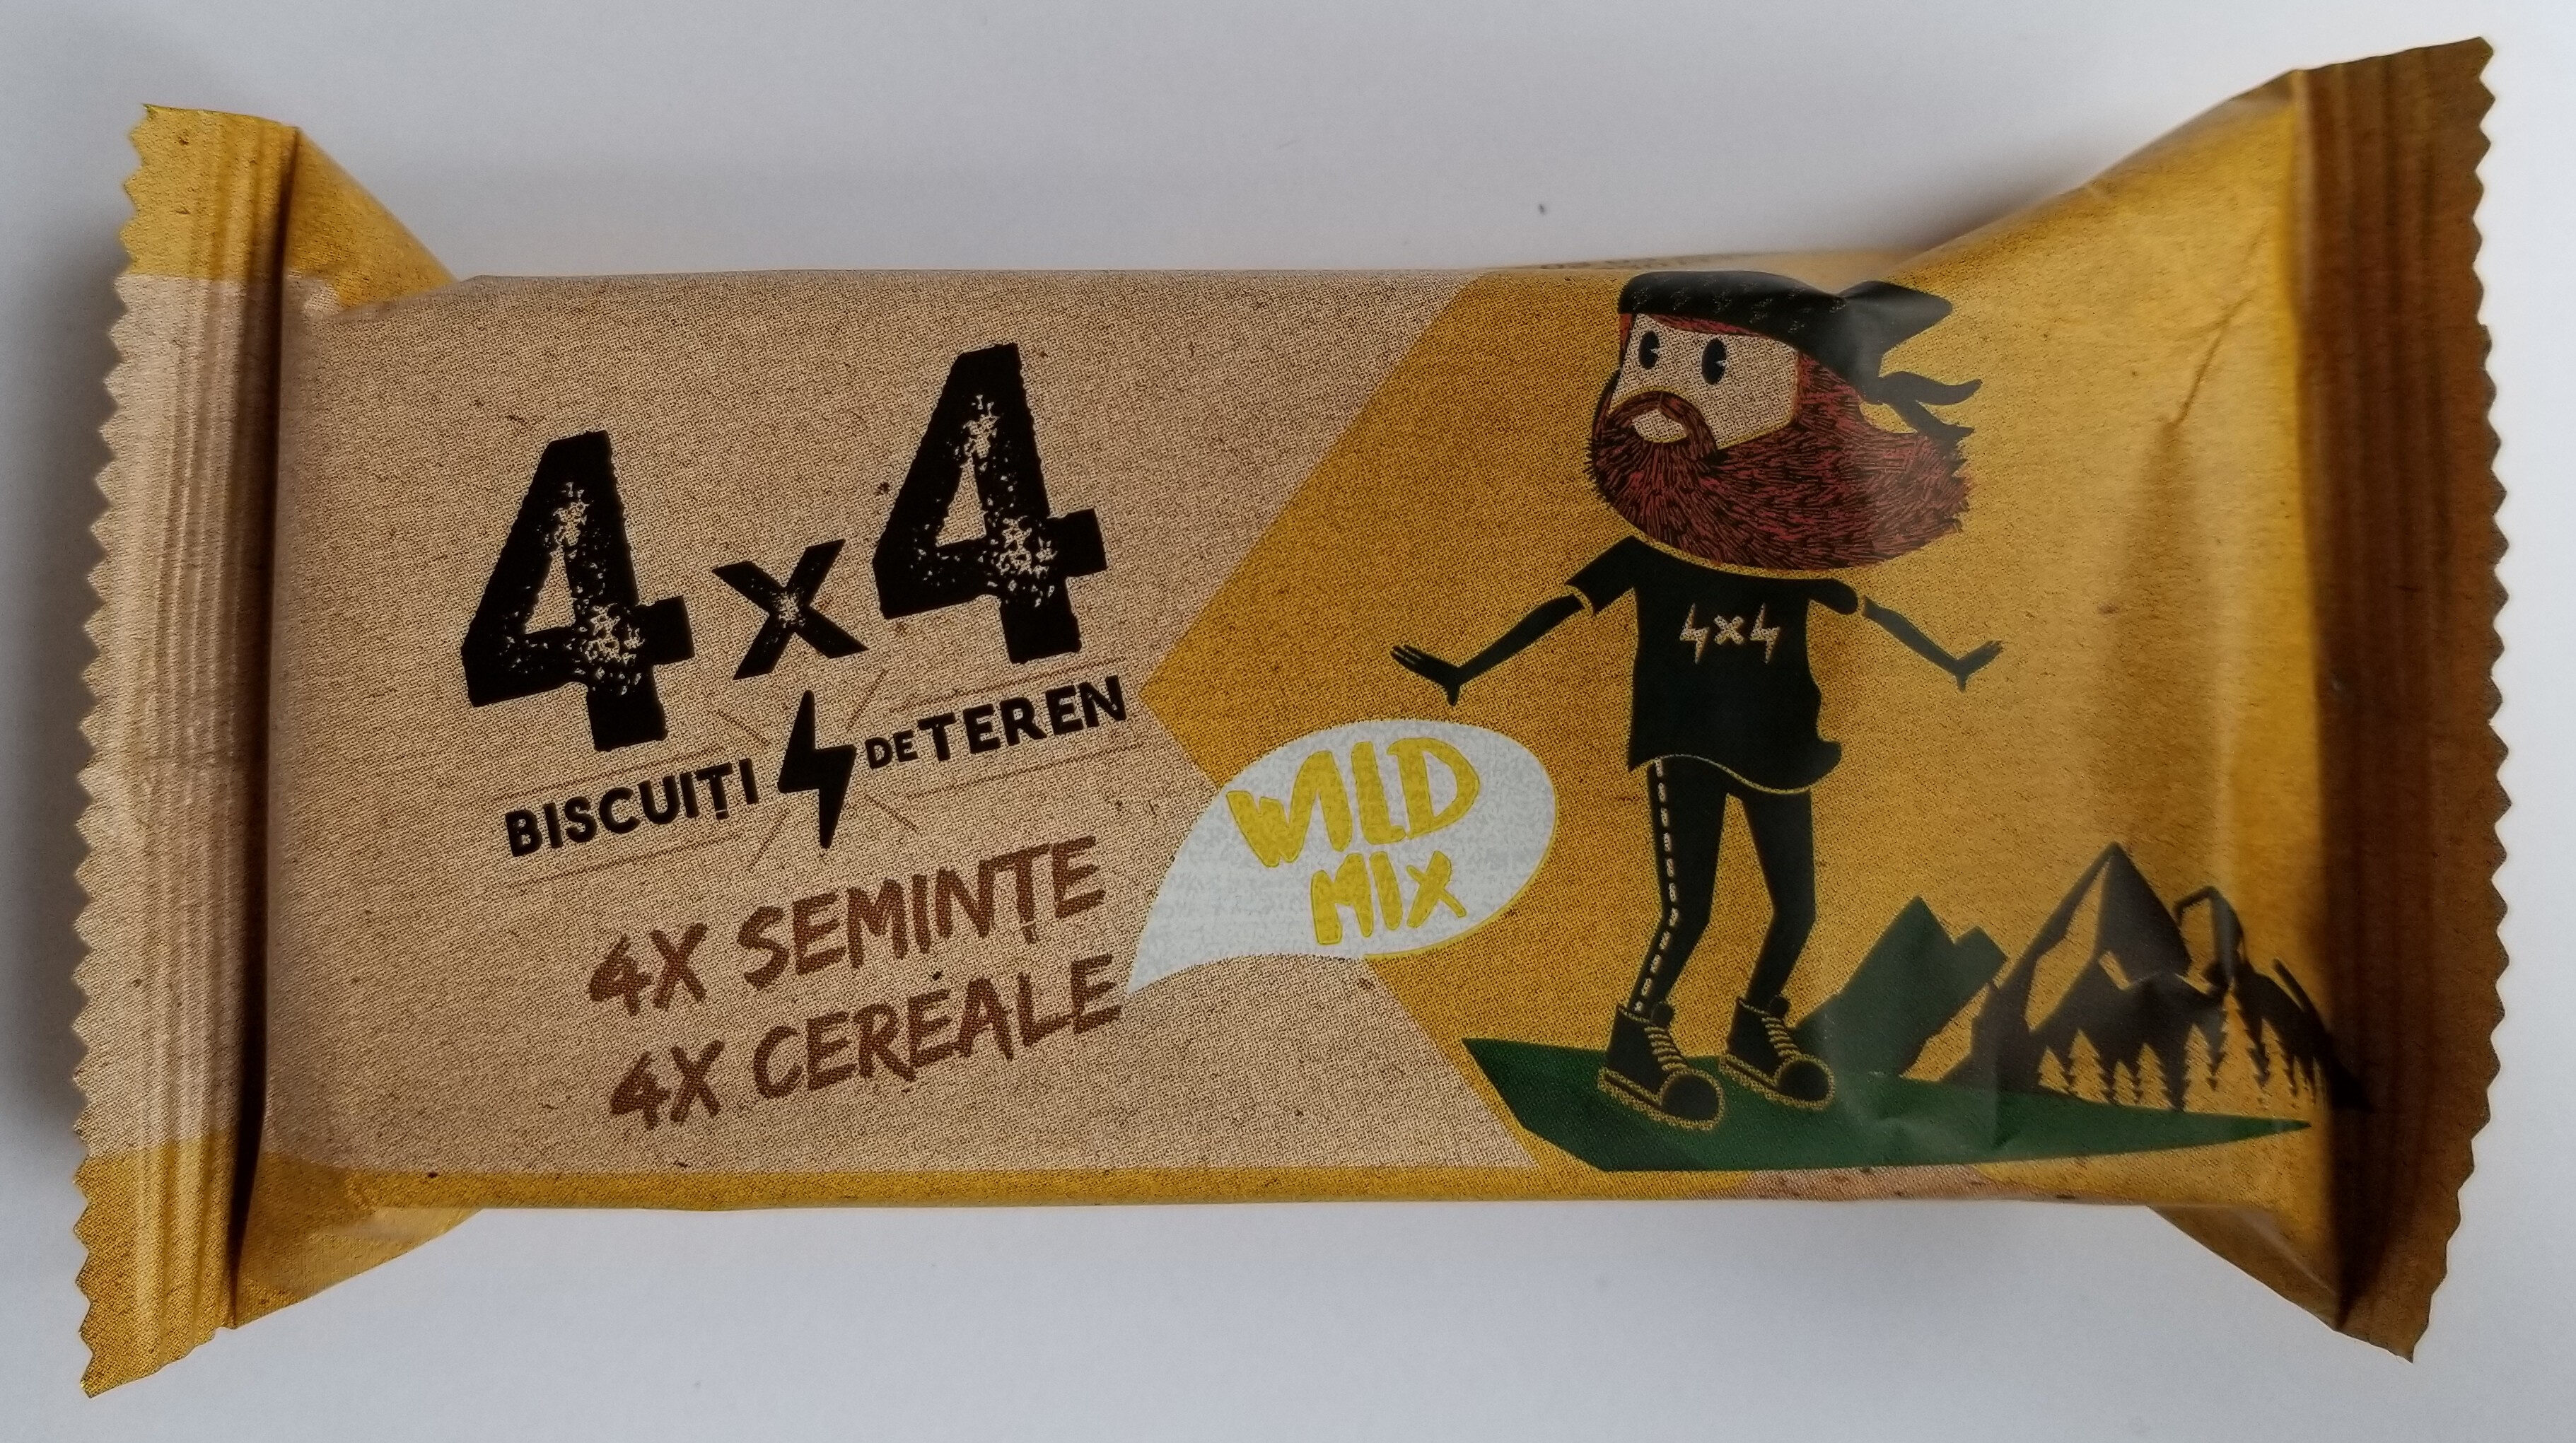 4x4 Biscuiți de teren Wild Mix - Product - ro